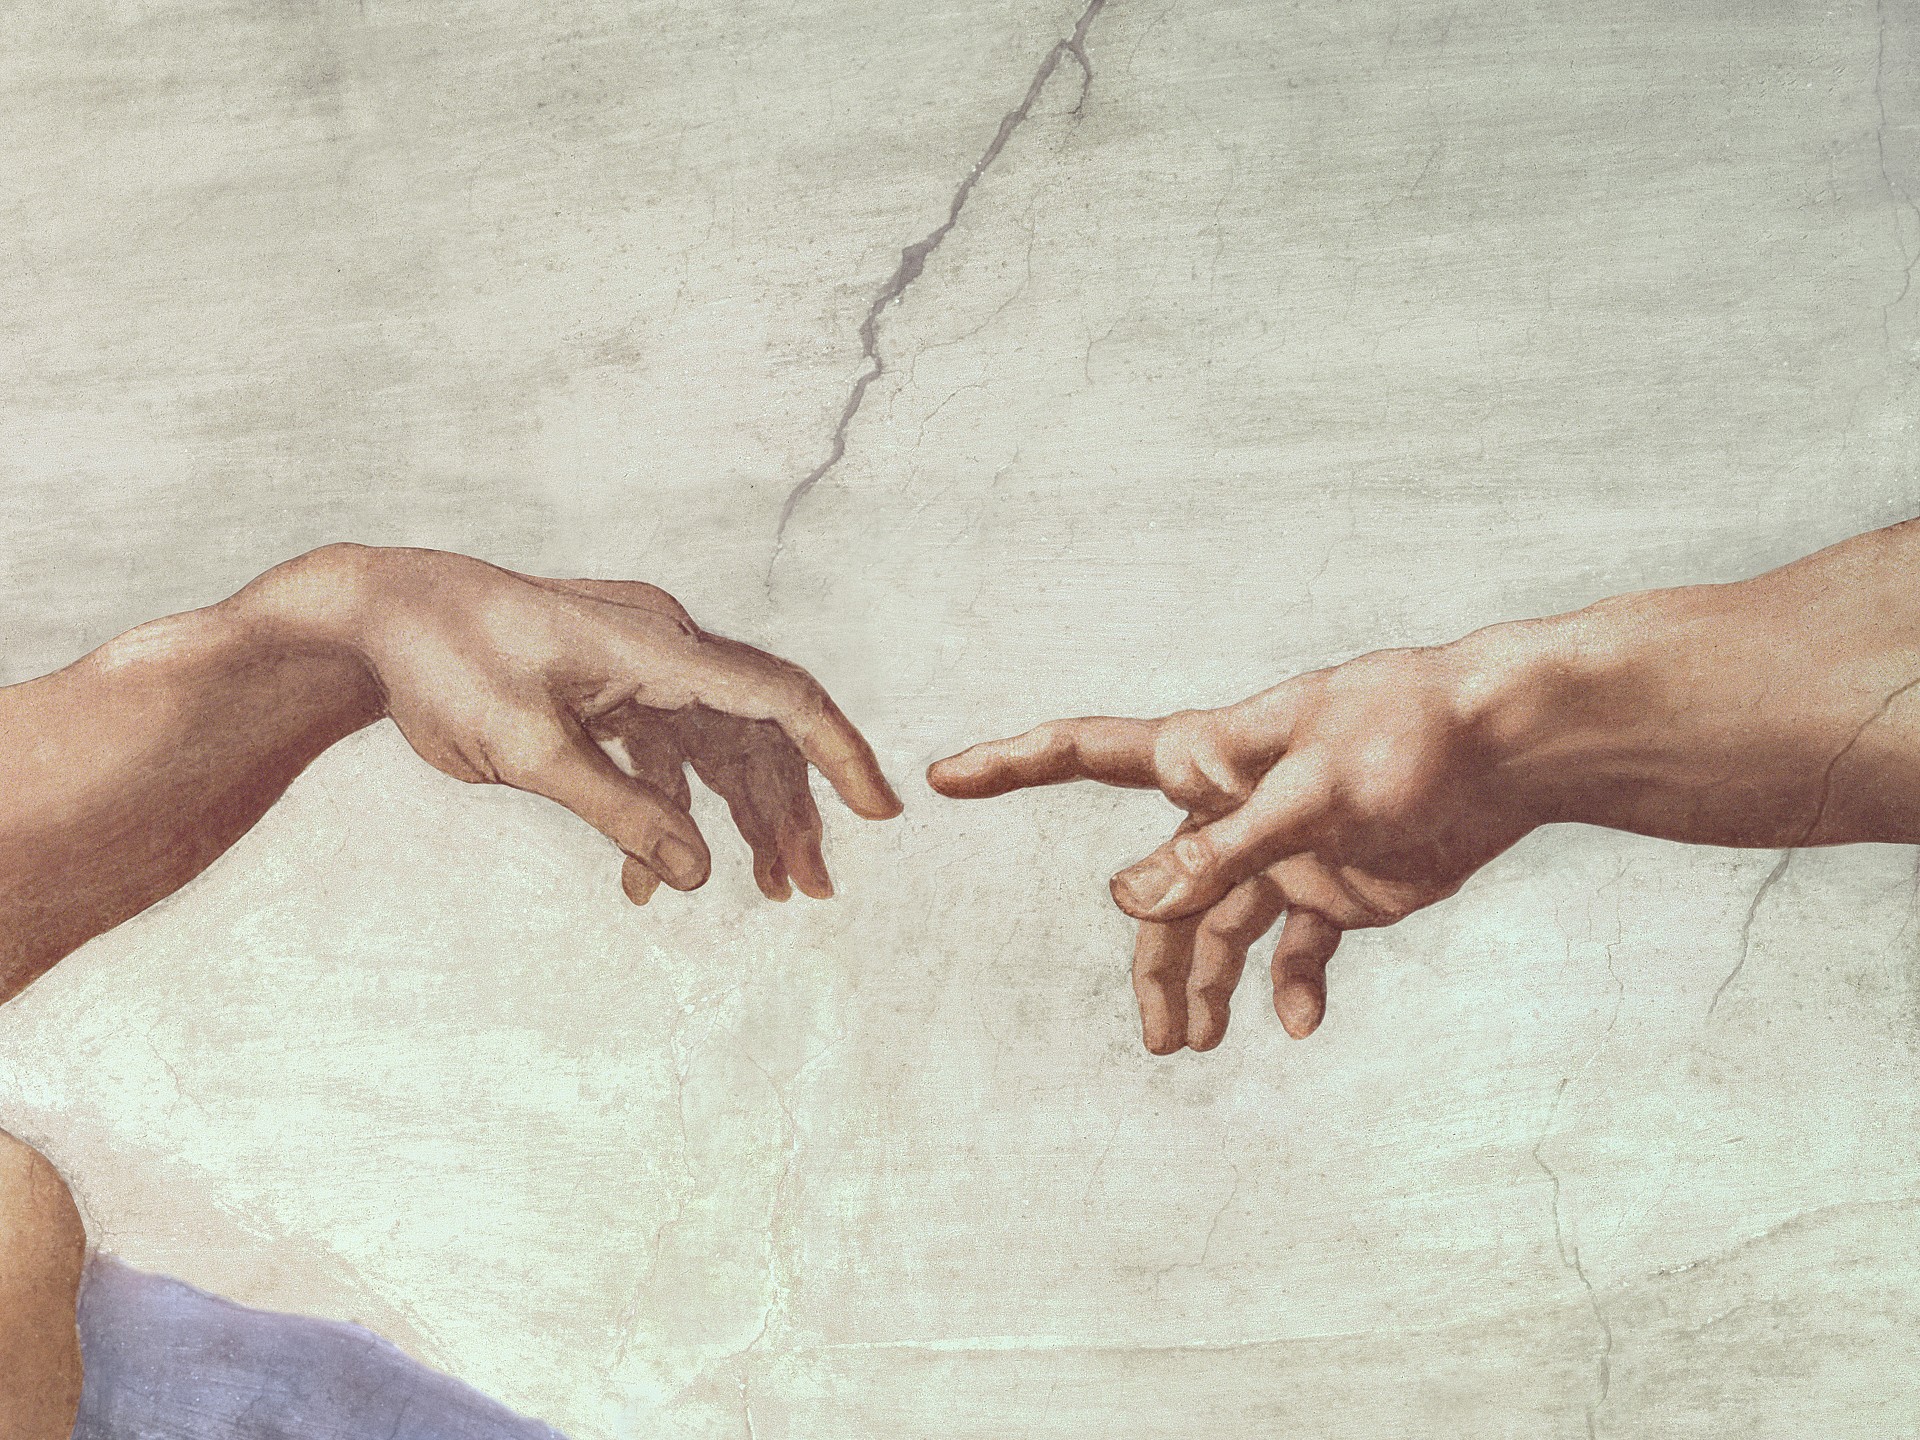 Michelangelo: Love & Death